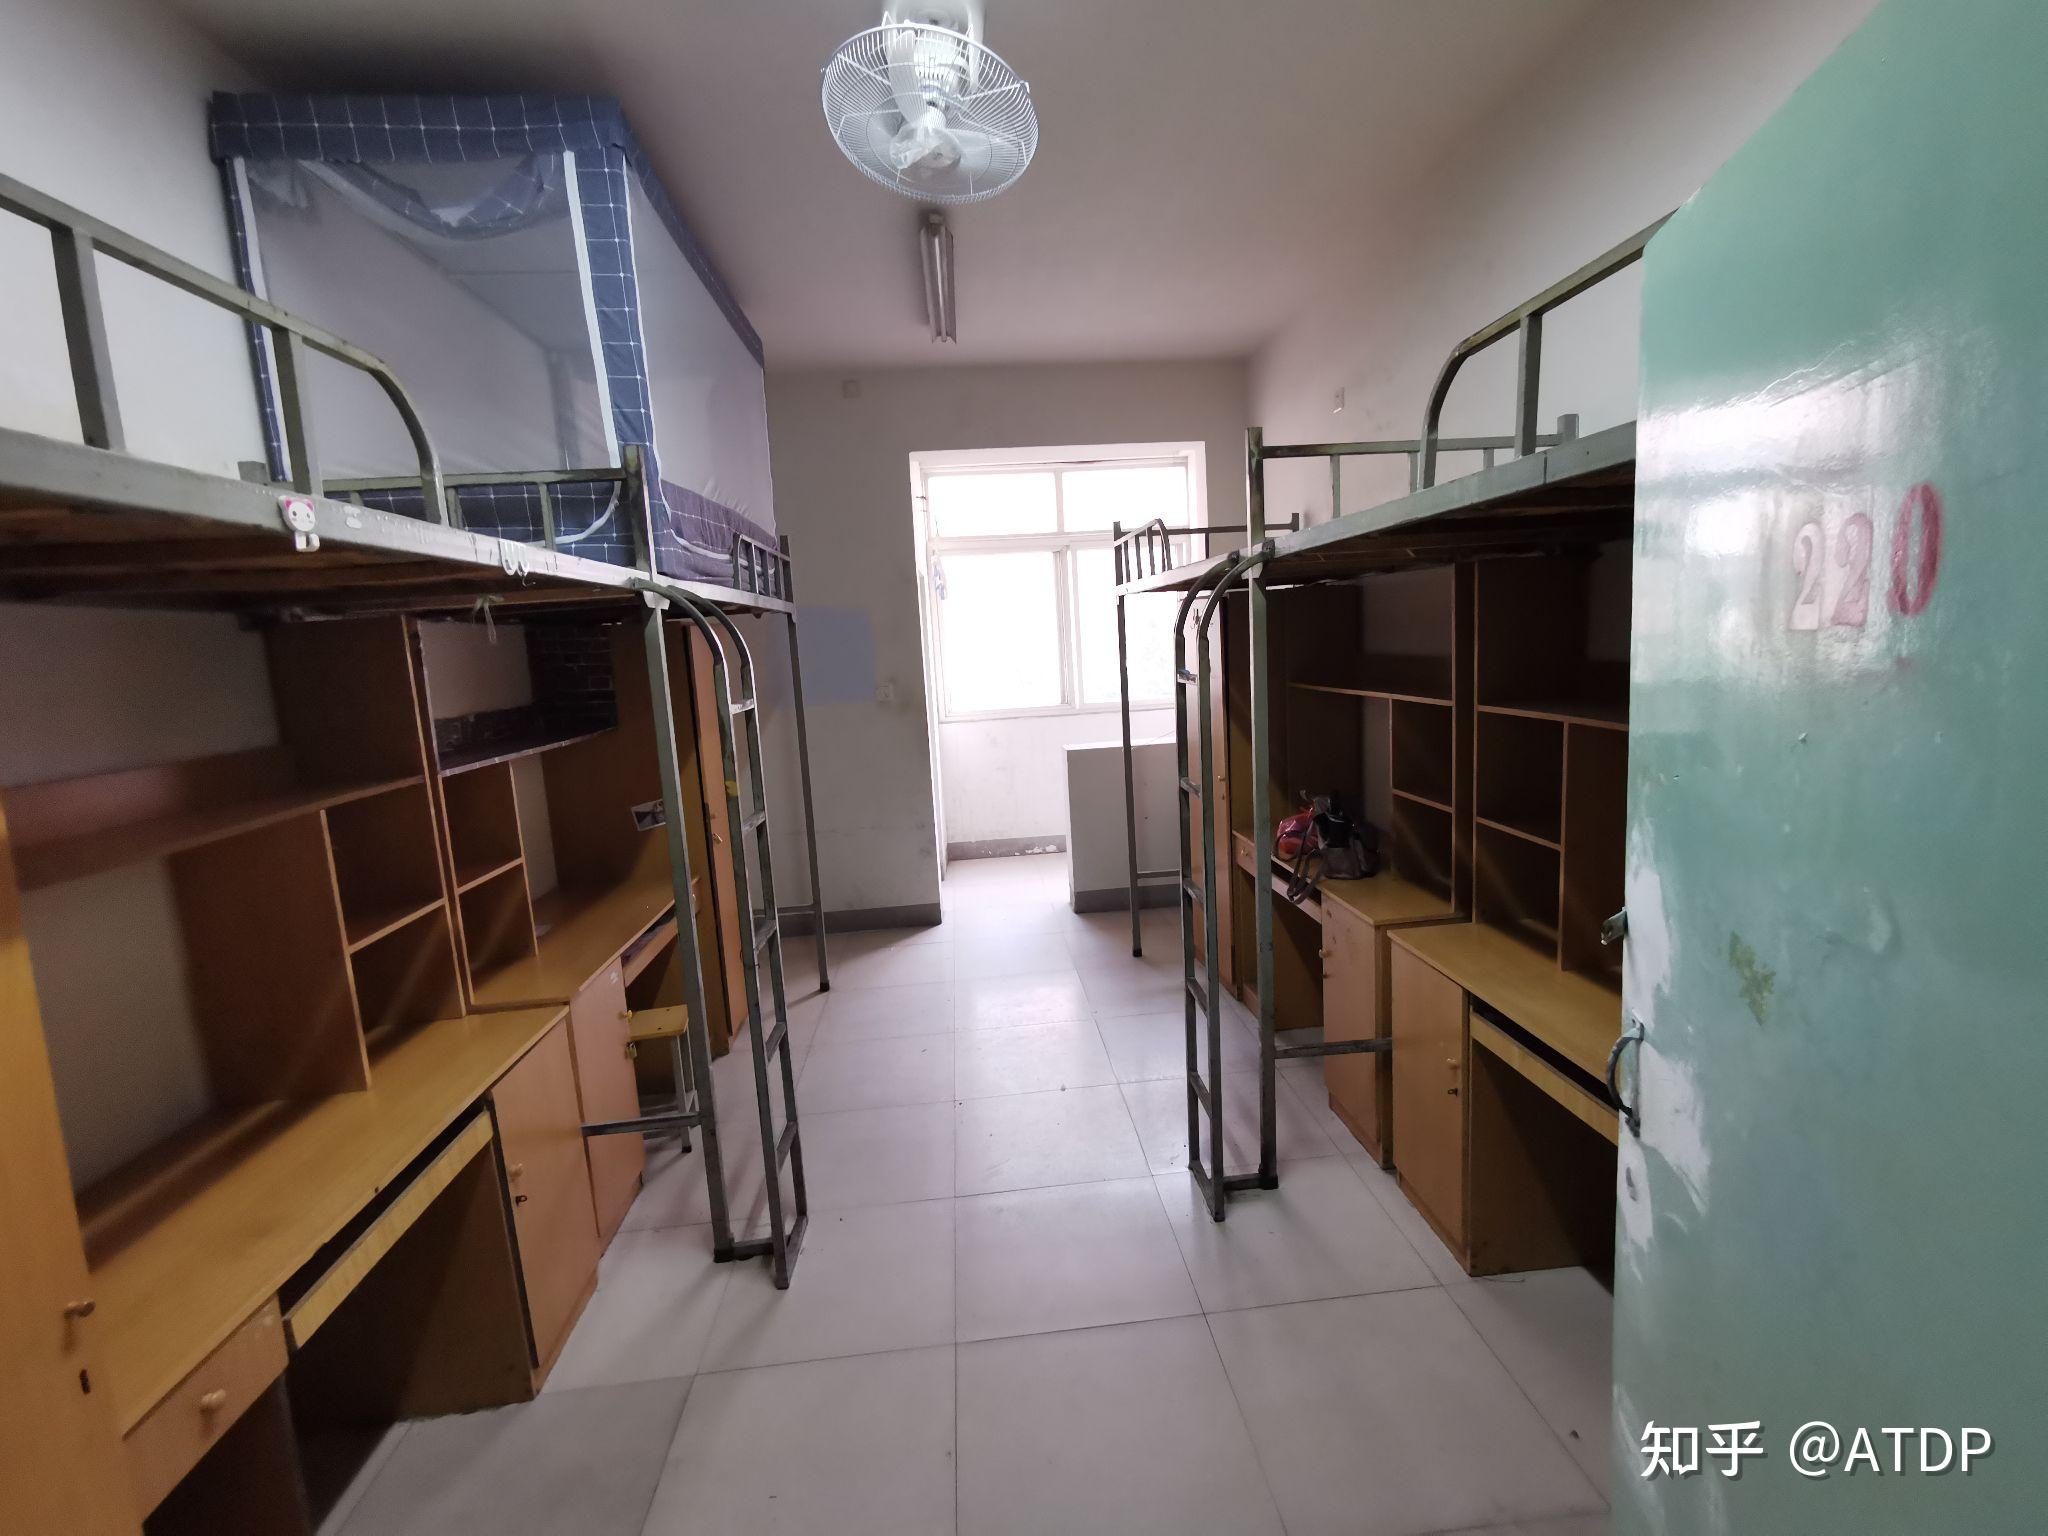 河南大学宿舍条件图片